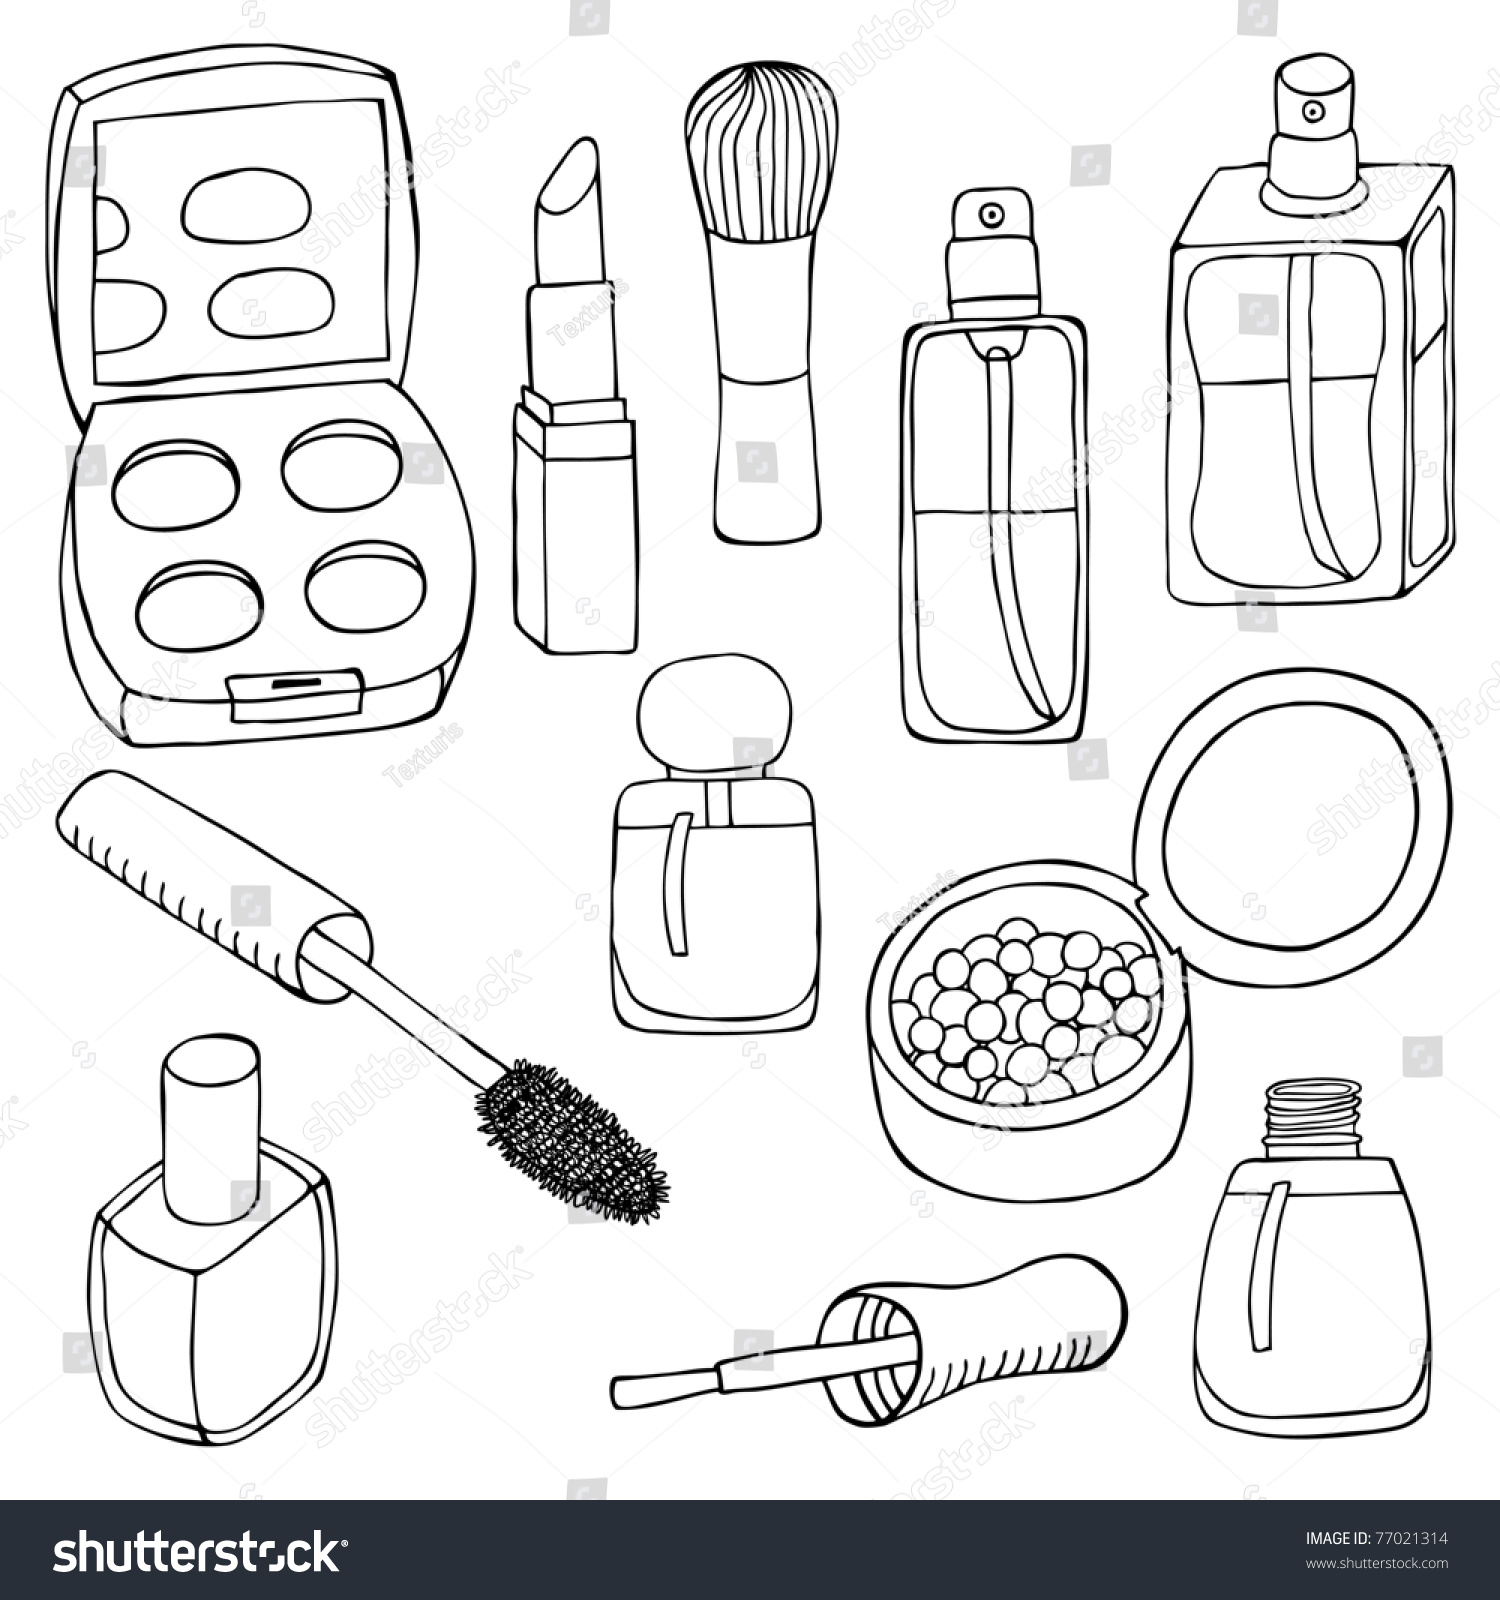 Sketch Cosmetic Set Stock Vector 77021314 - Shutterstock